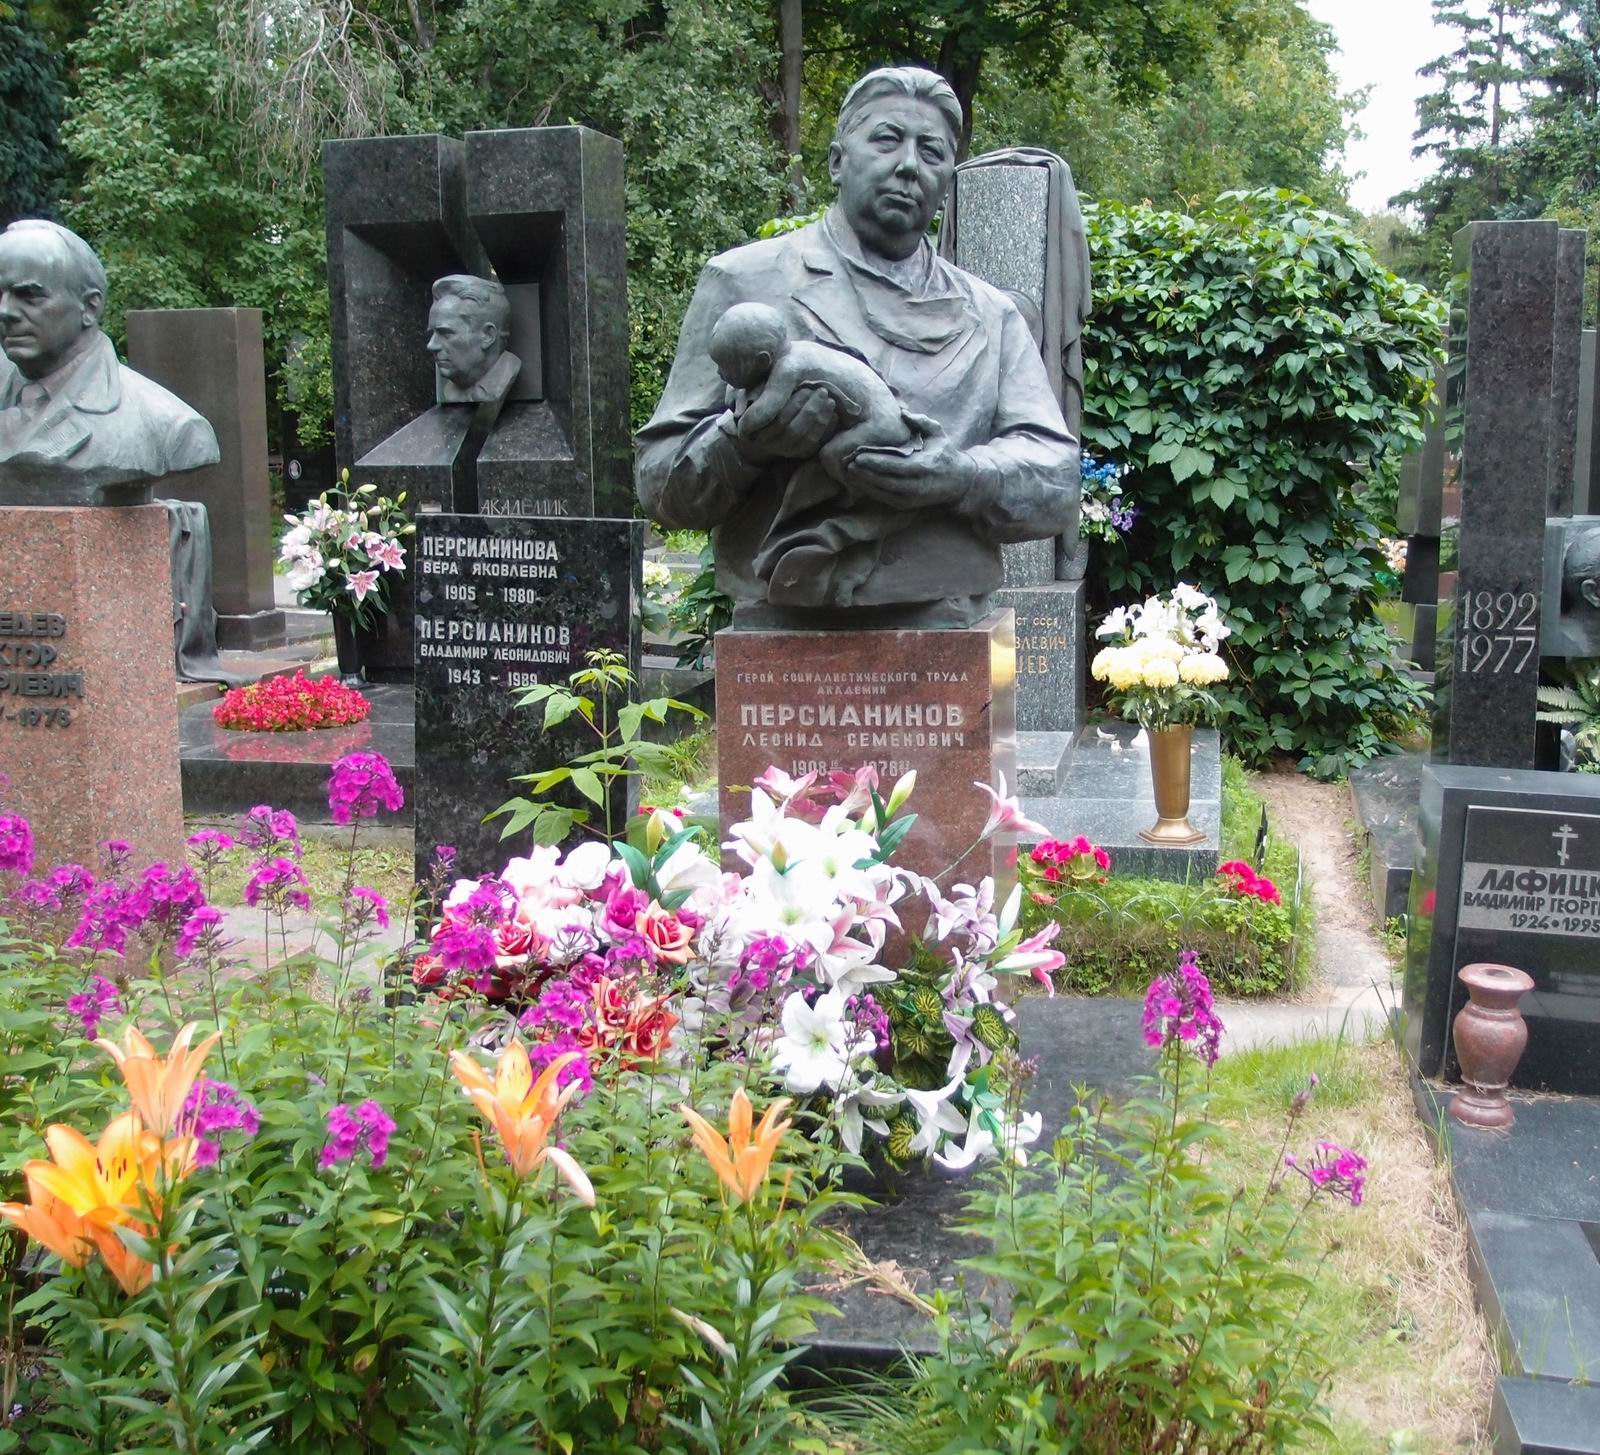 Памятник на могиле Персианинова Л.С. (1908–1978), ск. Л.Кербель, арх. Л.Мисожников, на Новодевичьем кладбище (9–3–2). Нажмите левую кнопку мыши чтобы увидеть фрагмент памятника.